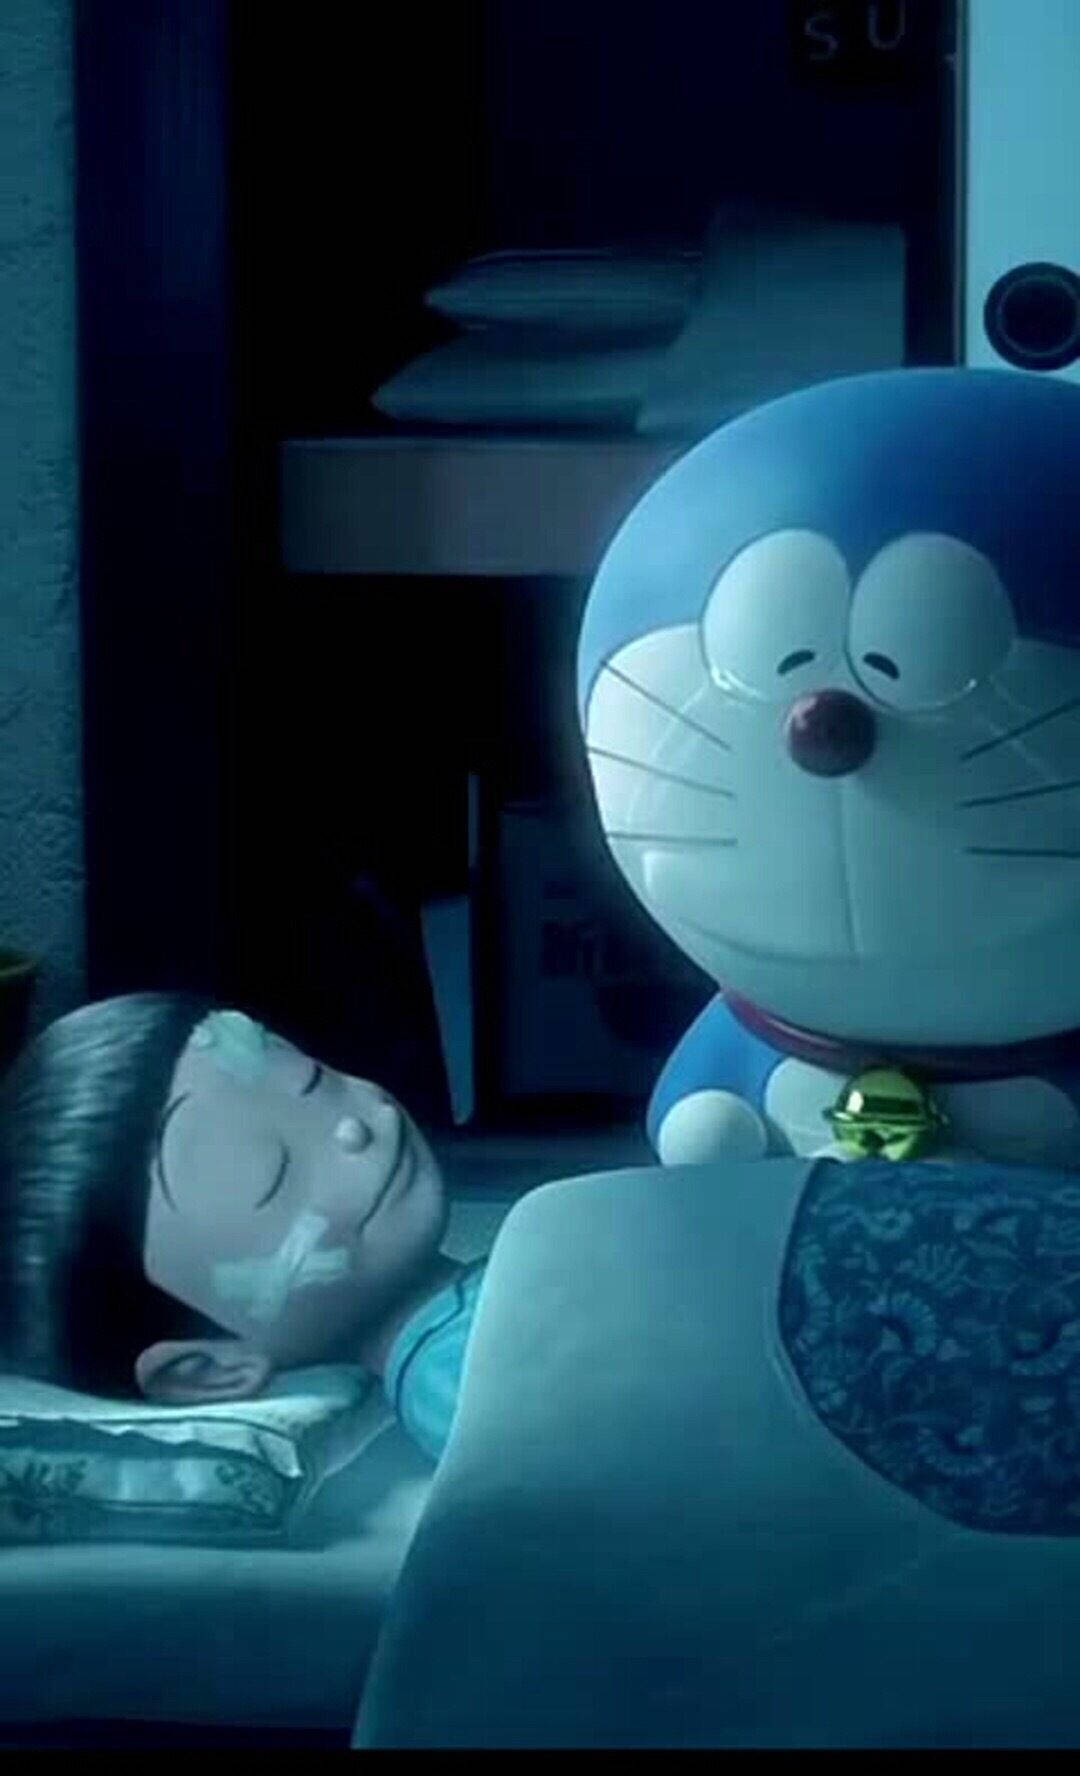 Doraemon Watching Over Cute Nobita Wallpaper